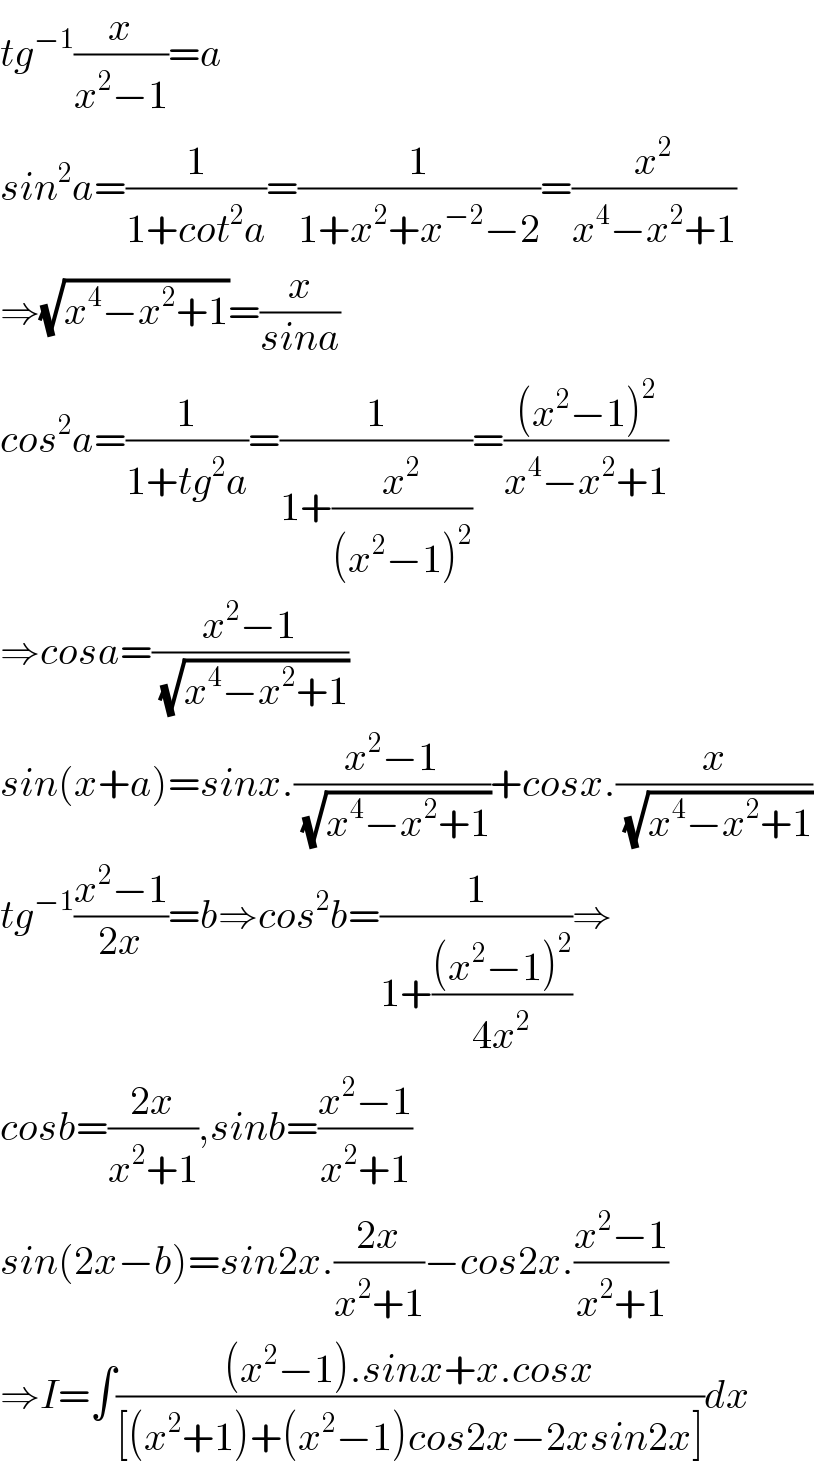 tg^(−1) (x/(x^2 −1))=a  sin^2 a=(1/(1+cot^2 a))=(1/(1+x^2 +x^(−2) −2))=(x^2 /(x^4 −x^2 +1))  ⇒(√(x^4 −x^2 +1))=(x/(sina))  cos^2 a=(1/(1+tg^2 a))=(1/(1+(x^2 /((x^2 −1)^2 ))))=(((x^2 −1)^2 )/(x^4 −x^2 +1))  ⇒cosa=((x^2 −1)/(√(x^4 −x^2 +1)))  sin(x+a)=sinx.((x^2 −1)/(√(x^4 −x^2 +1)))+cosx.(x/(√(x^4 −x^2 +1)))  tg^(−1) ((x^2 −1)/(2x))=b⇒cos^2 b=(1/(1+(((x^2 −1)^2 )/(4x^2 ))))⇒  cosb=((2x)/(x^2 +1)),sinb=((x^2 −1)/(x^2 +1))  sin(2x−b)=sin2x.((2x)/(x^2 +1))−cos2x.((x^2 −1)/(x^2 +1))  ⇒I=∫(((x^2 −1).sinx+x.cosx)/([(x^2 +1)+(x^2 −1)cos2x−2xsin2x]))dx  